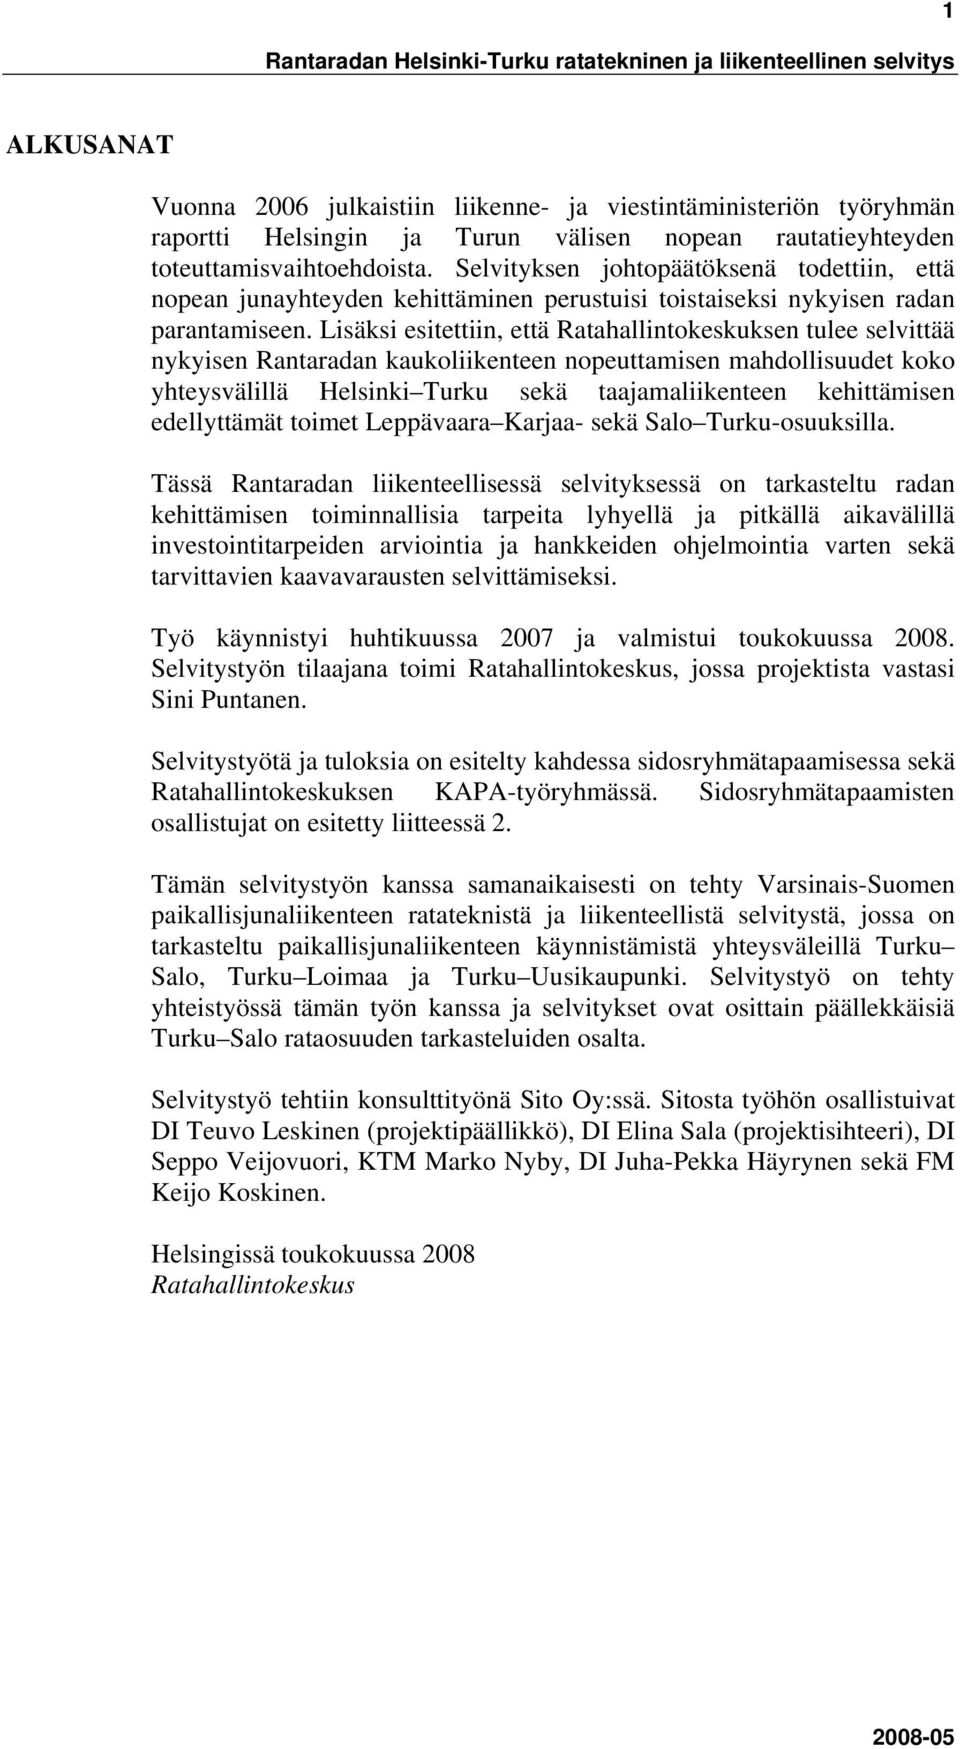 Lisäksi esitettiin, että Ratahallintokeskuksen tulee selvittää nykyisen Rantaradan kaukoliikenteen nopeuttamisen mahdollisuudet koko yhteysvälillä Helsinki Turku sekä taajamaliikenteen kehittämisen